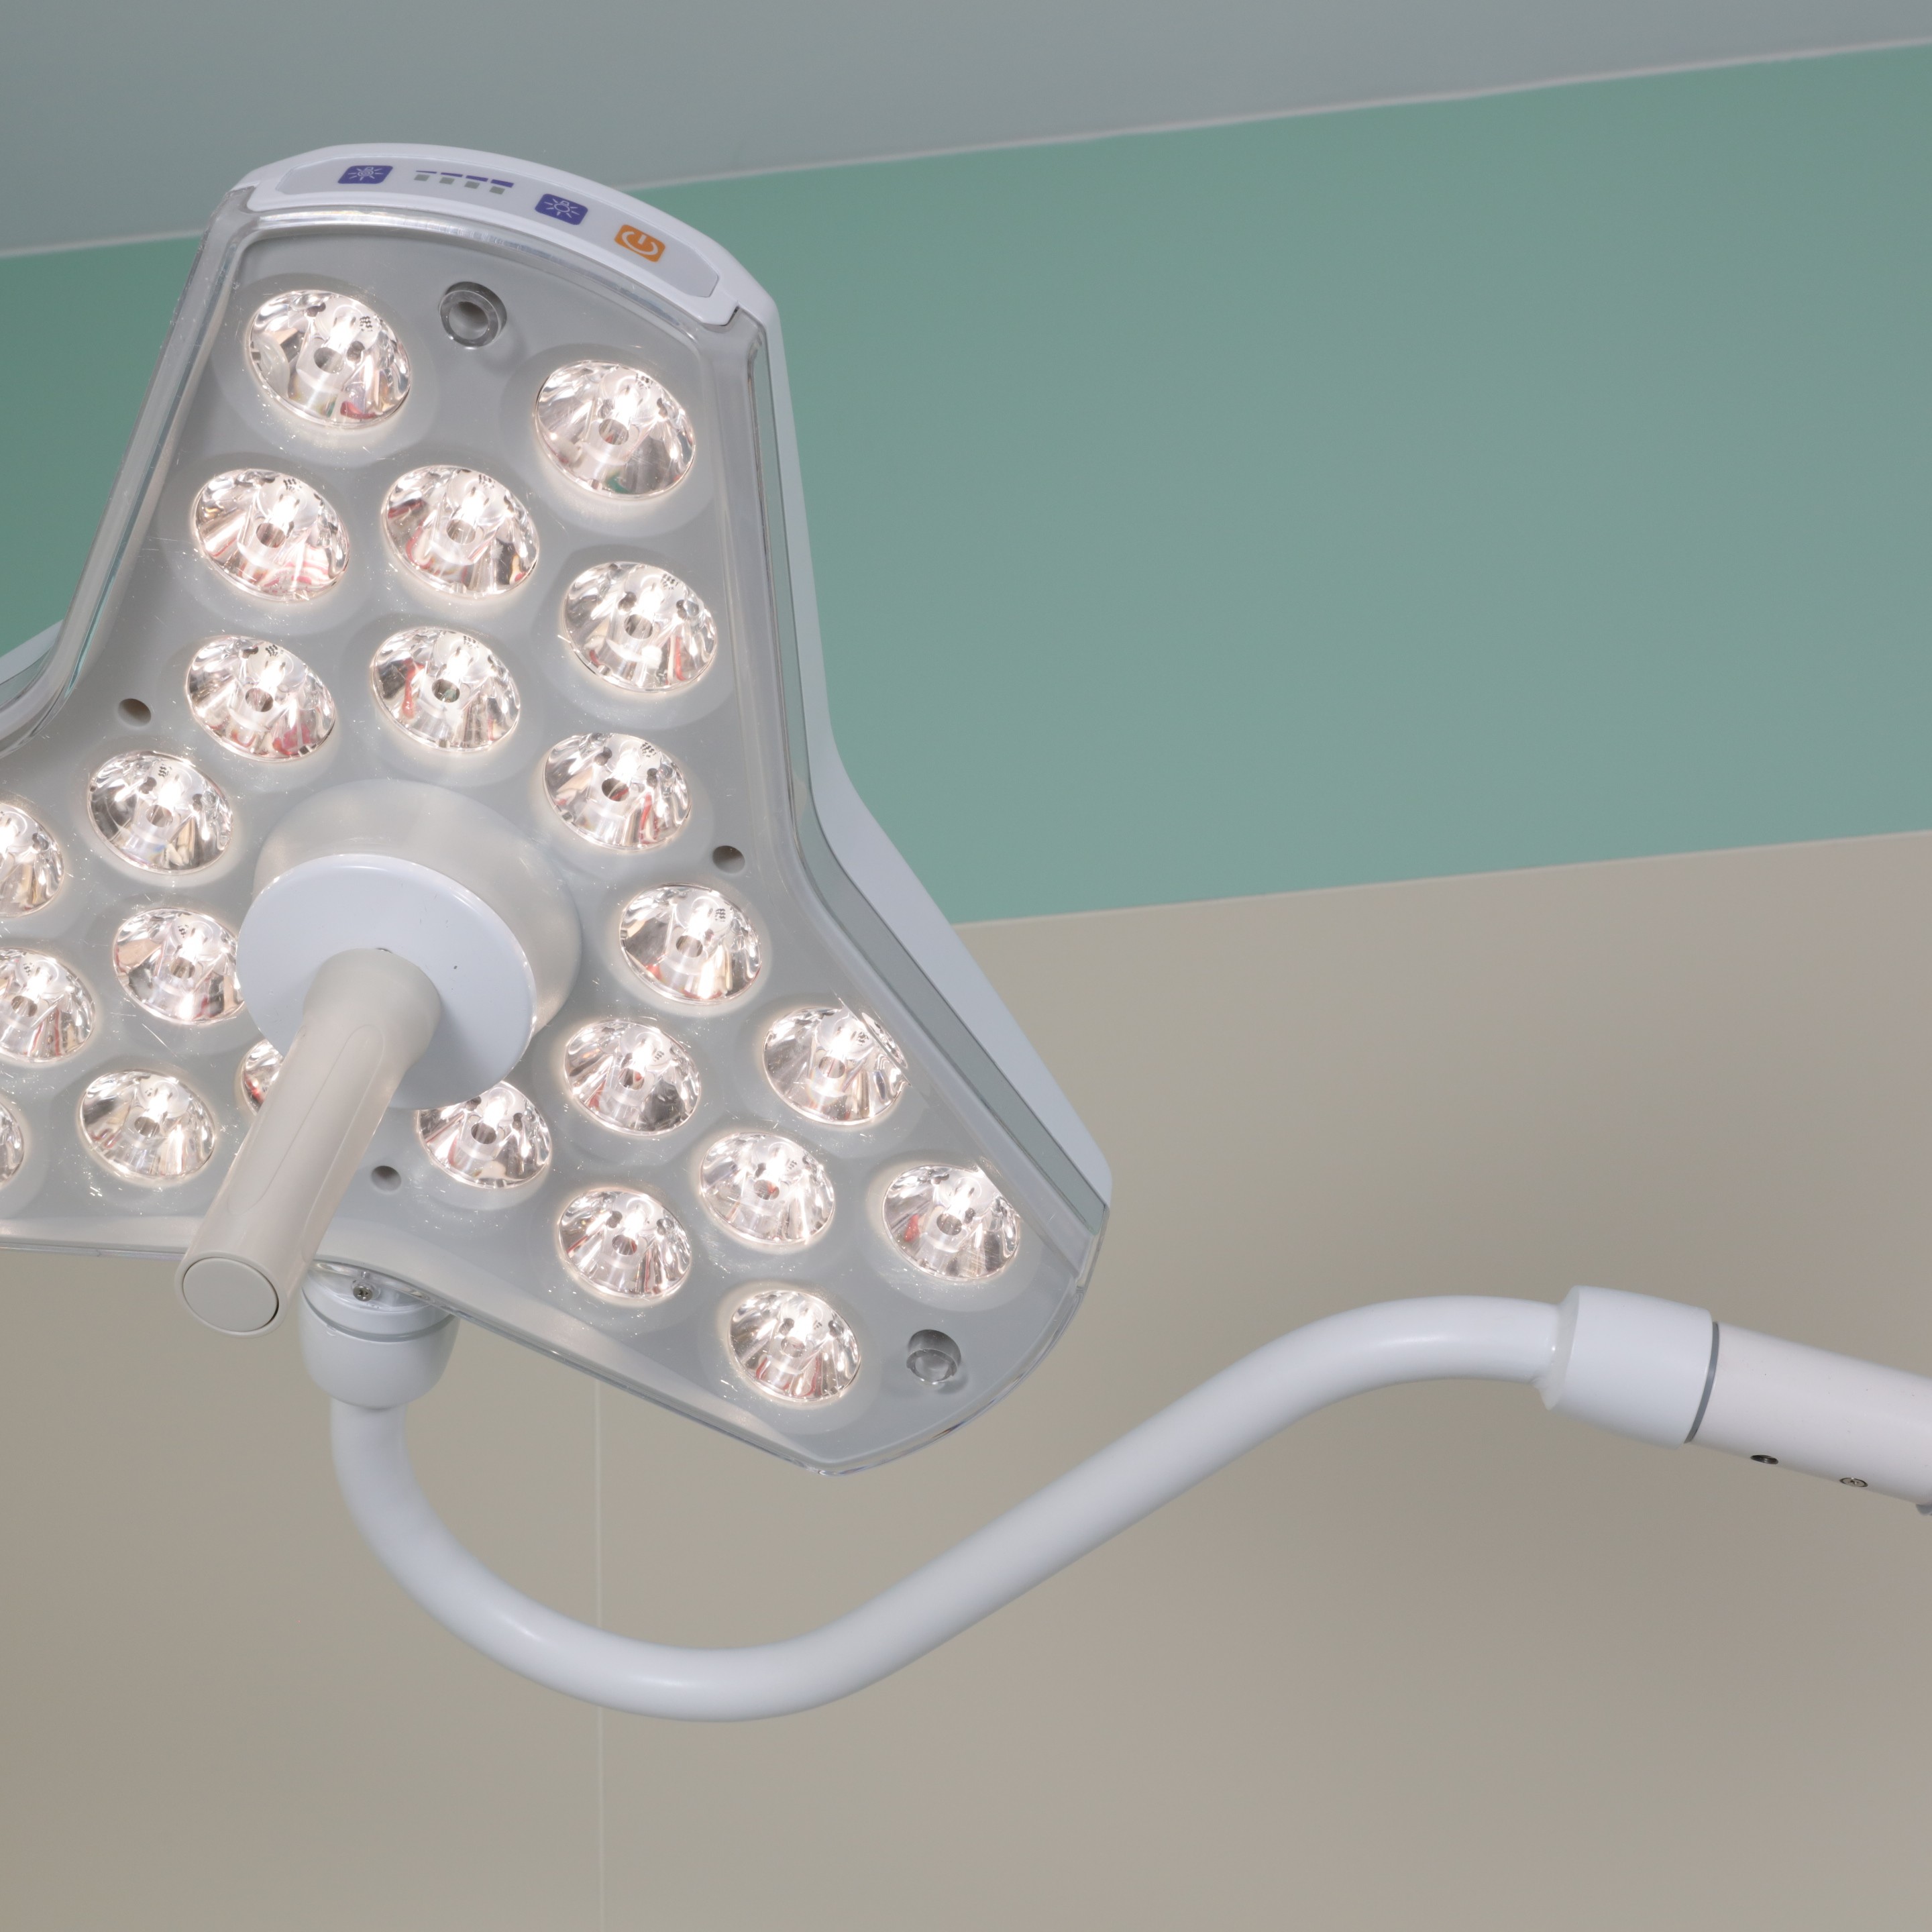 Medical lamp-5